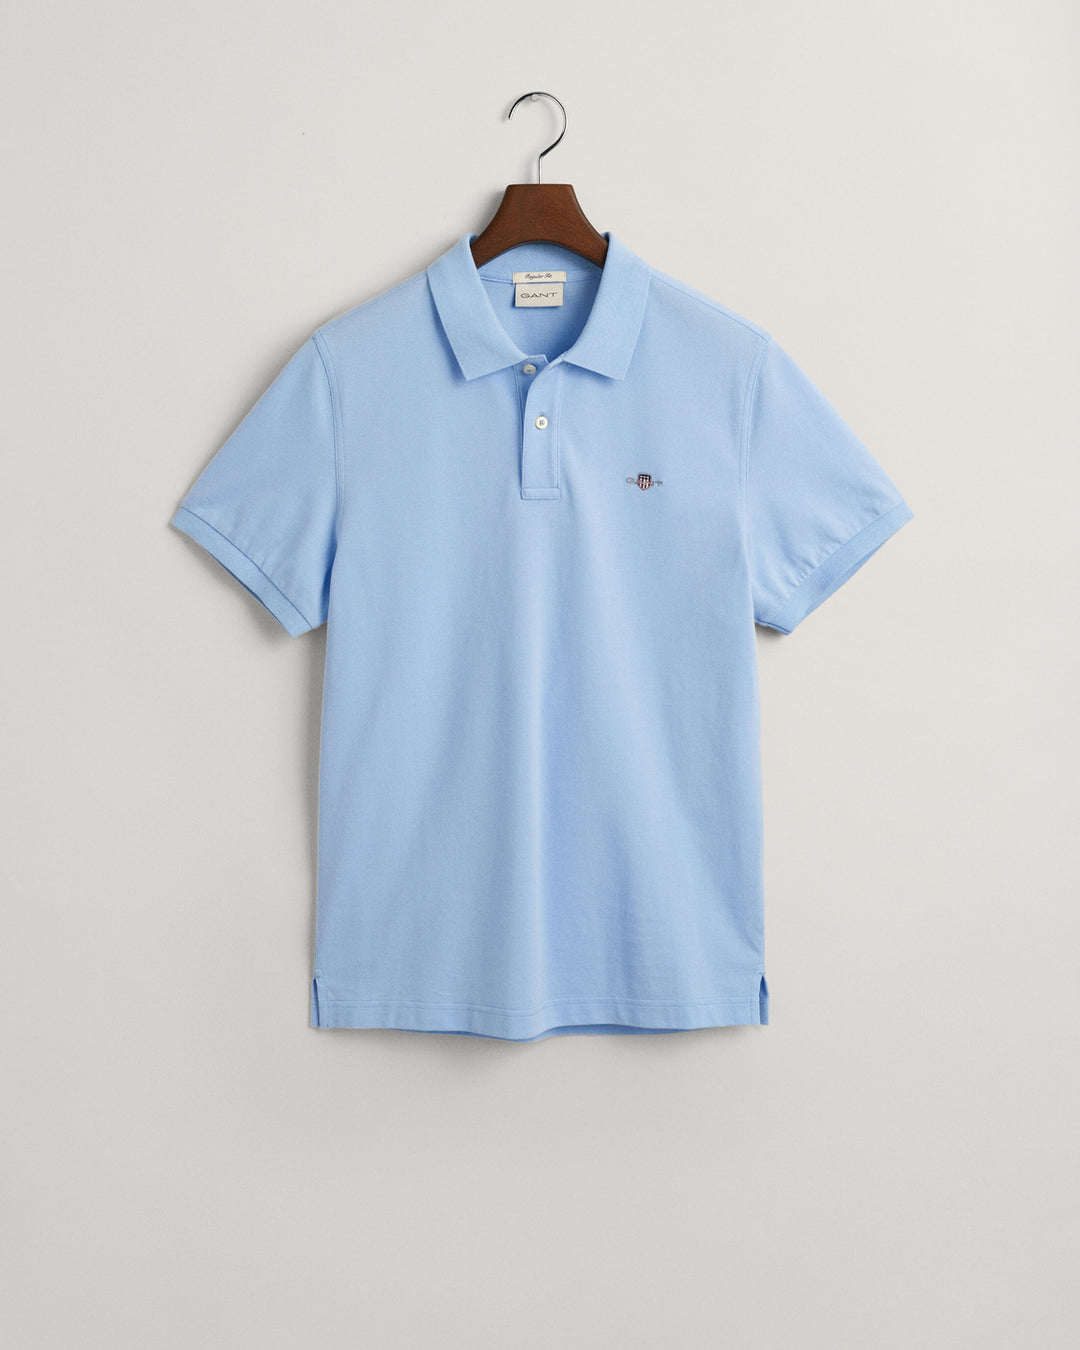 Regular Fit Shield Pique Polo Shirt Capri Blue